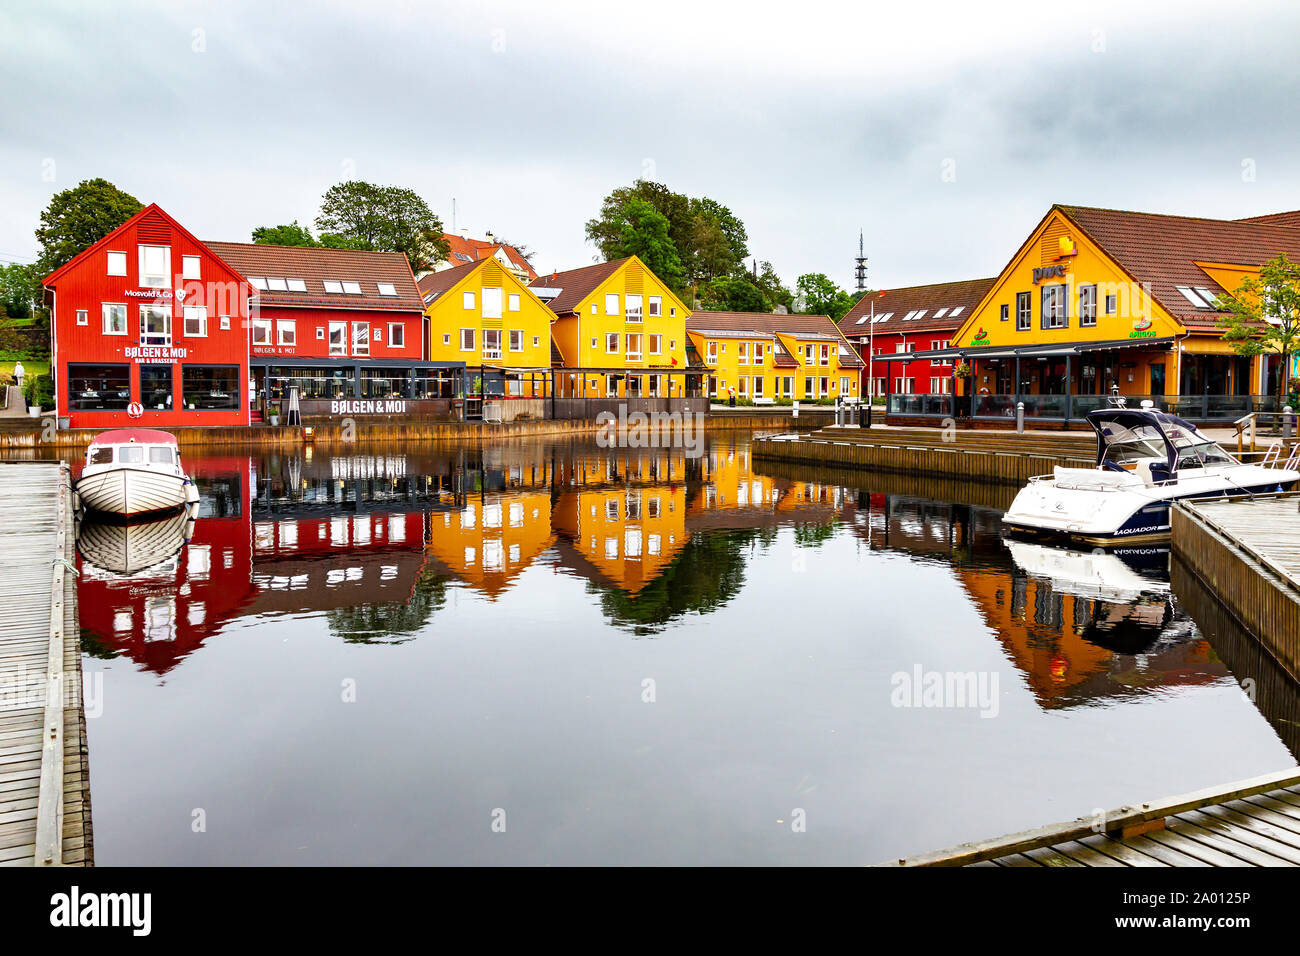 Fischer's Quay, mit Reflexion der Holzbauten in den ruhigen Wasser, Kristiansand, Norwegen. Stockfoto